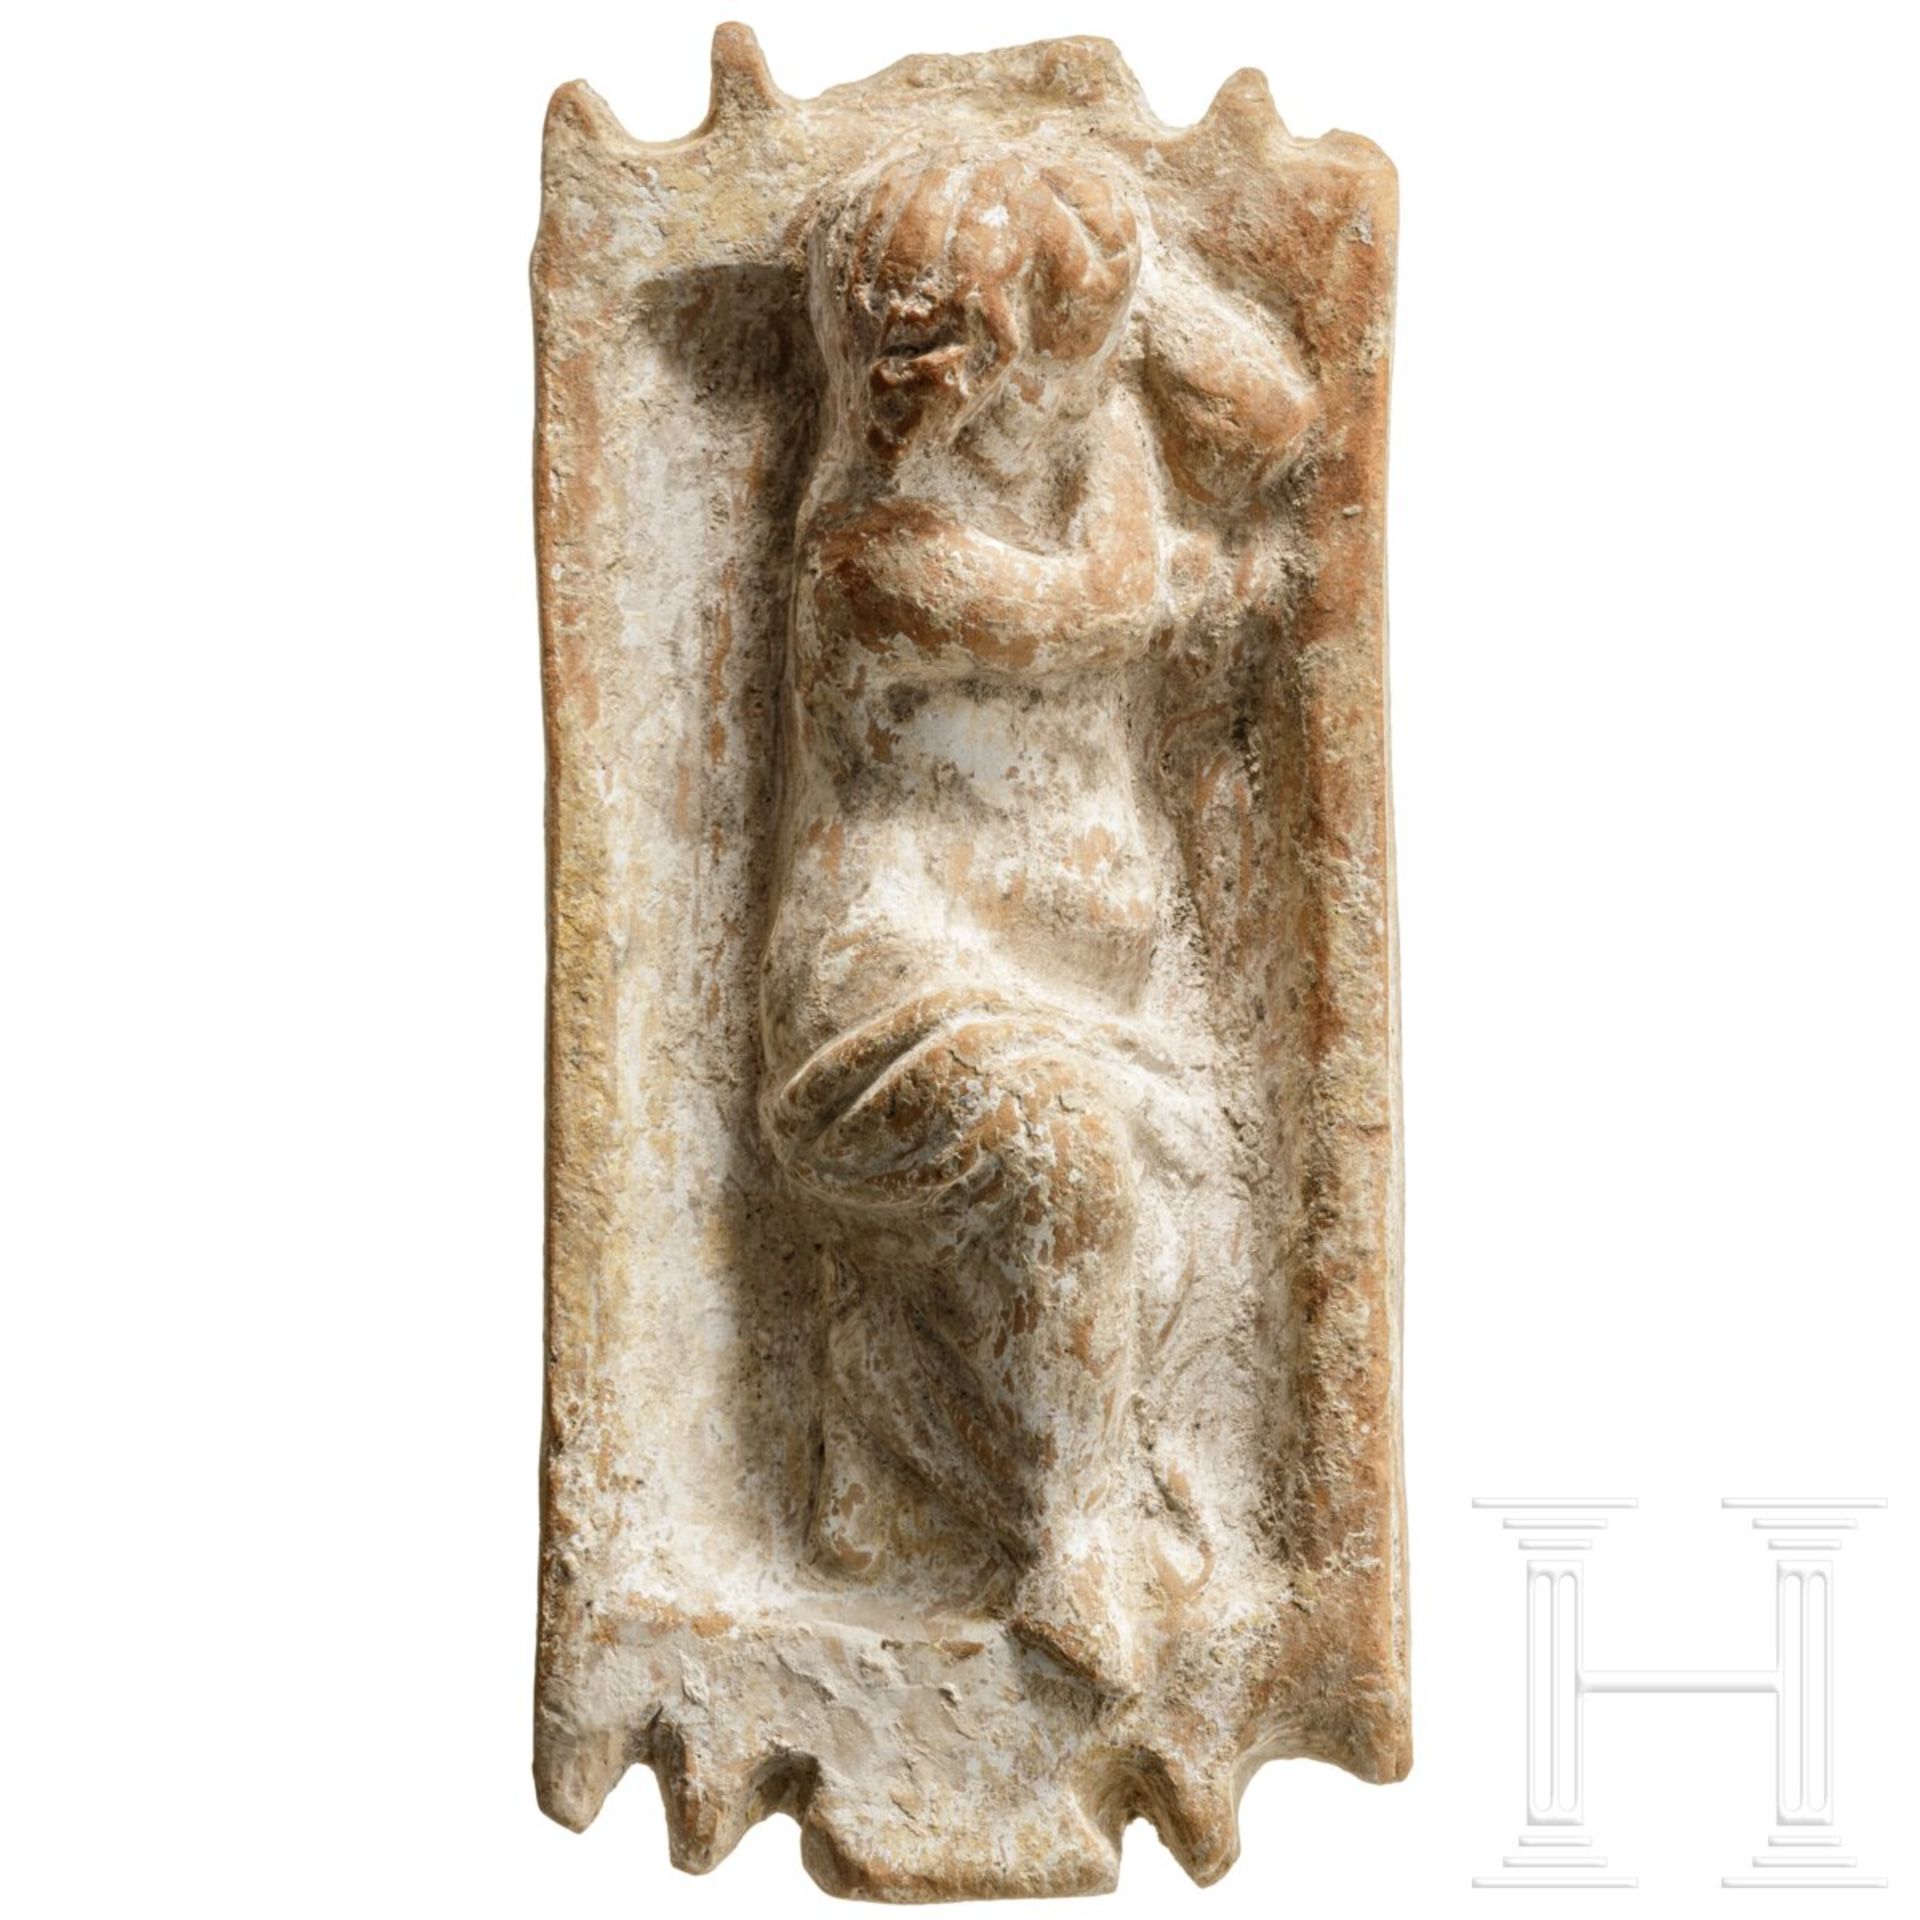 Schlafender Eros, Terrakotta, römisch, 2. - 3. Jhdt.   - Bild 2 aus 4